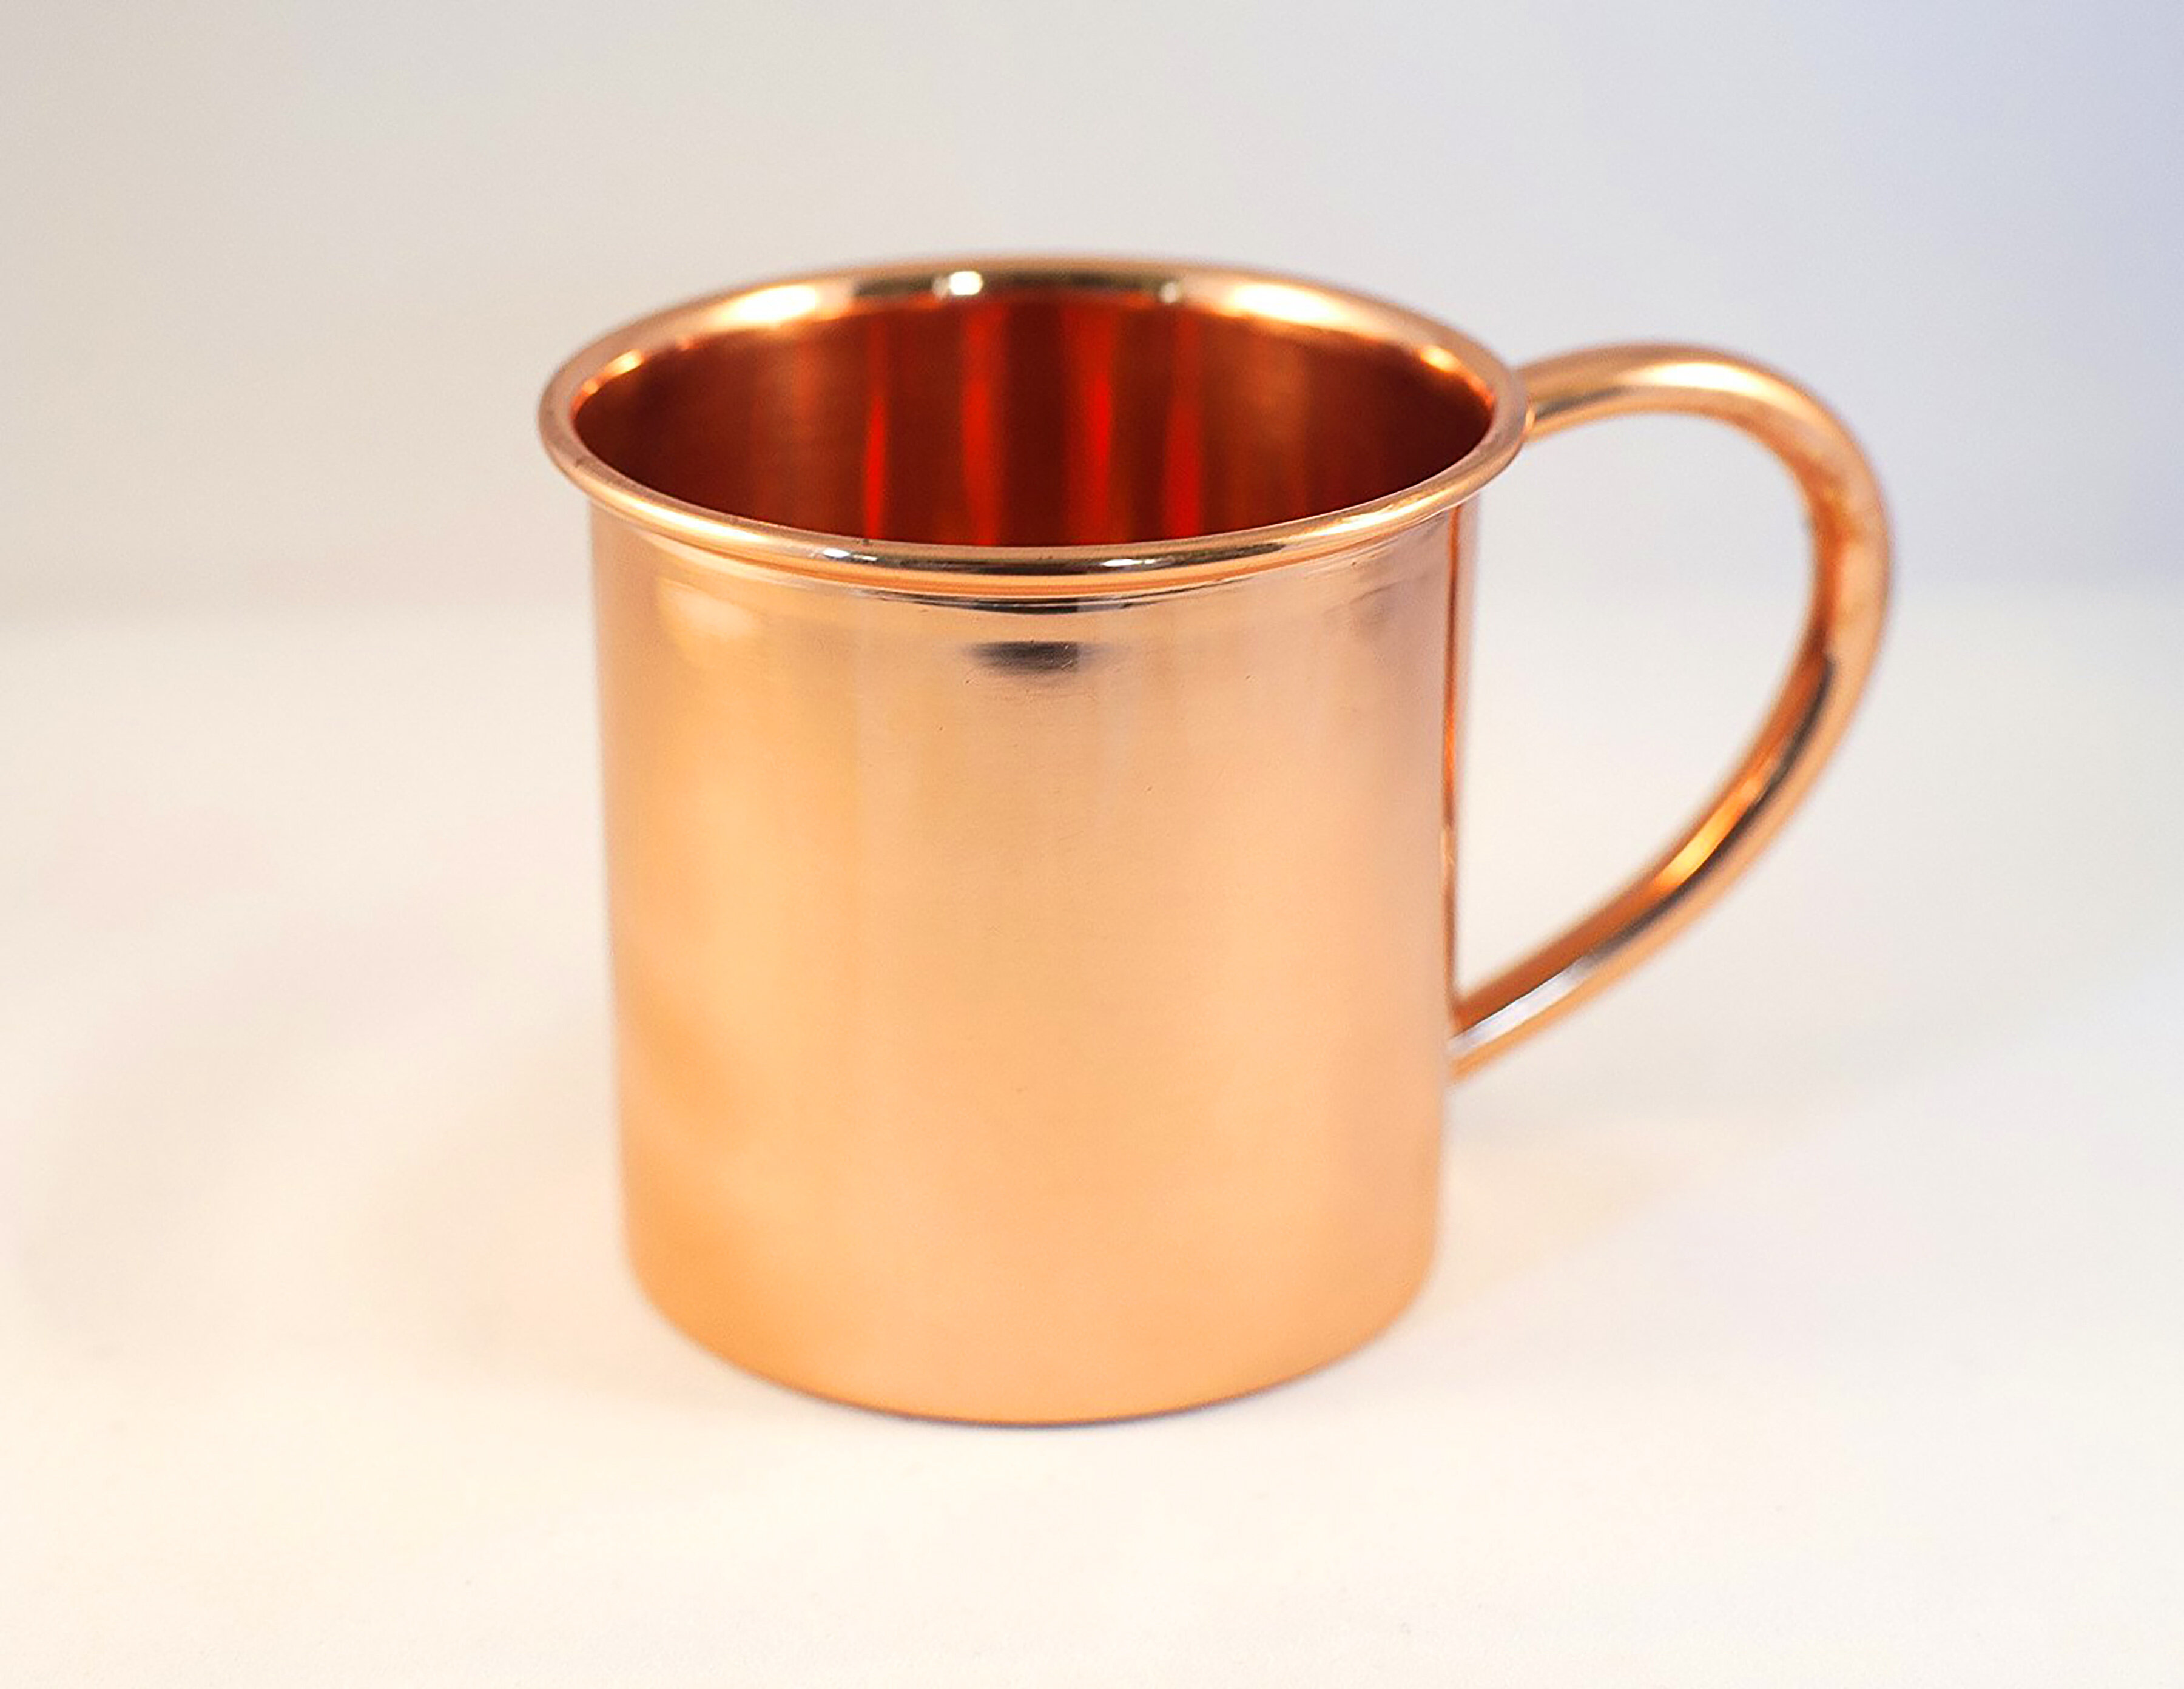 Sertodo Copper Just Right Cup, 10 oz